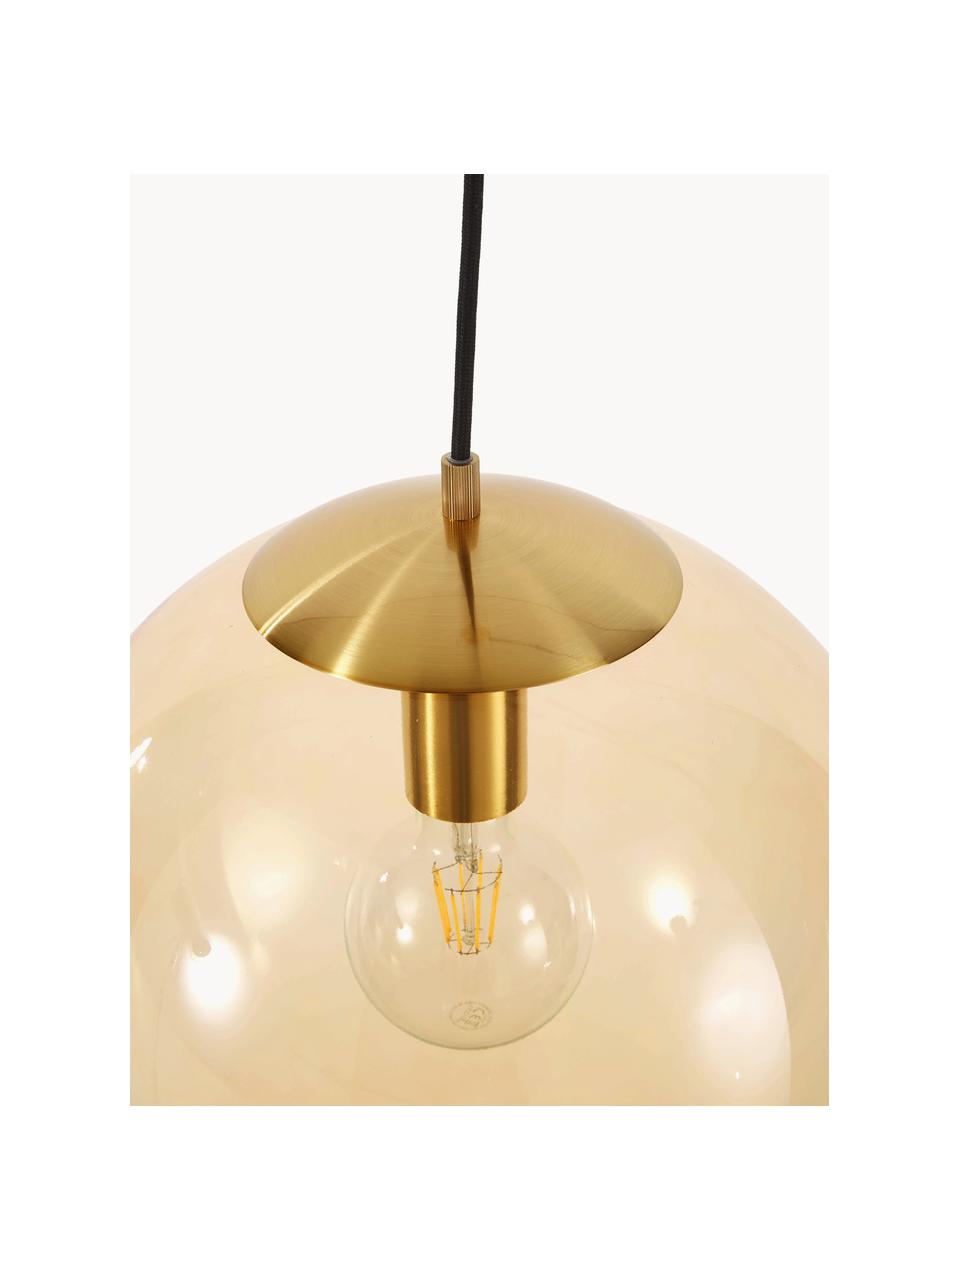 Lámpara de techo Bao, Pantalla: vidrio, Anclaje: metal galvanizado, Cable: cubierto en tela, Marrón claro, dorado, Ø 35 cm